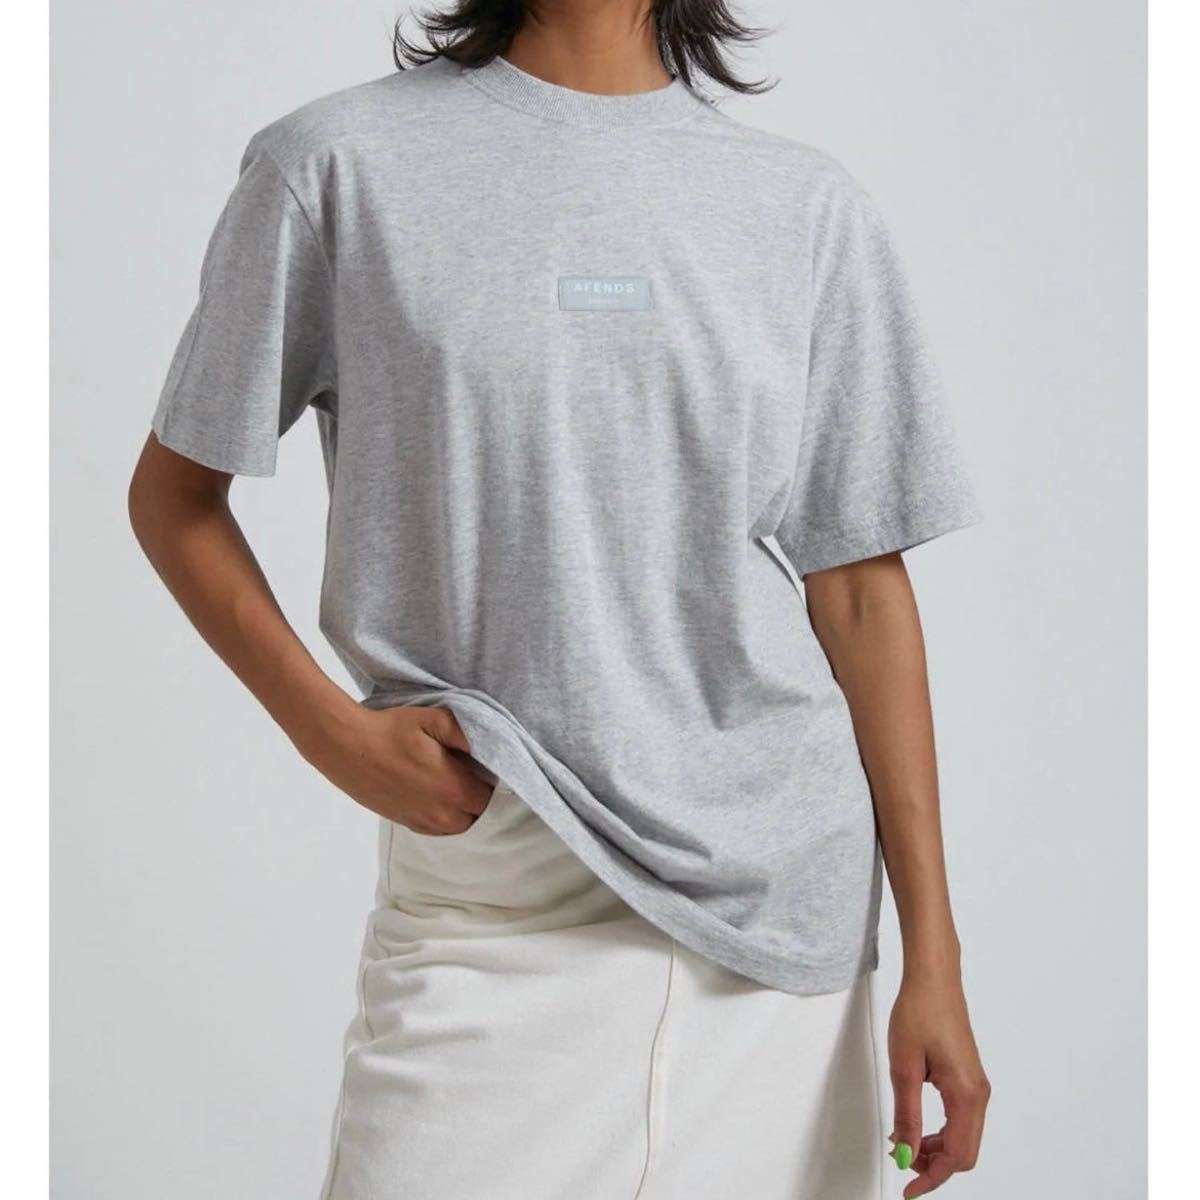 Afends. SOCIETYライトグレー 半袖Tシャツ 男女兼用 メンズ レディース ユニセックス ロゴ シンプル